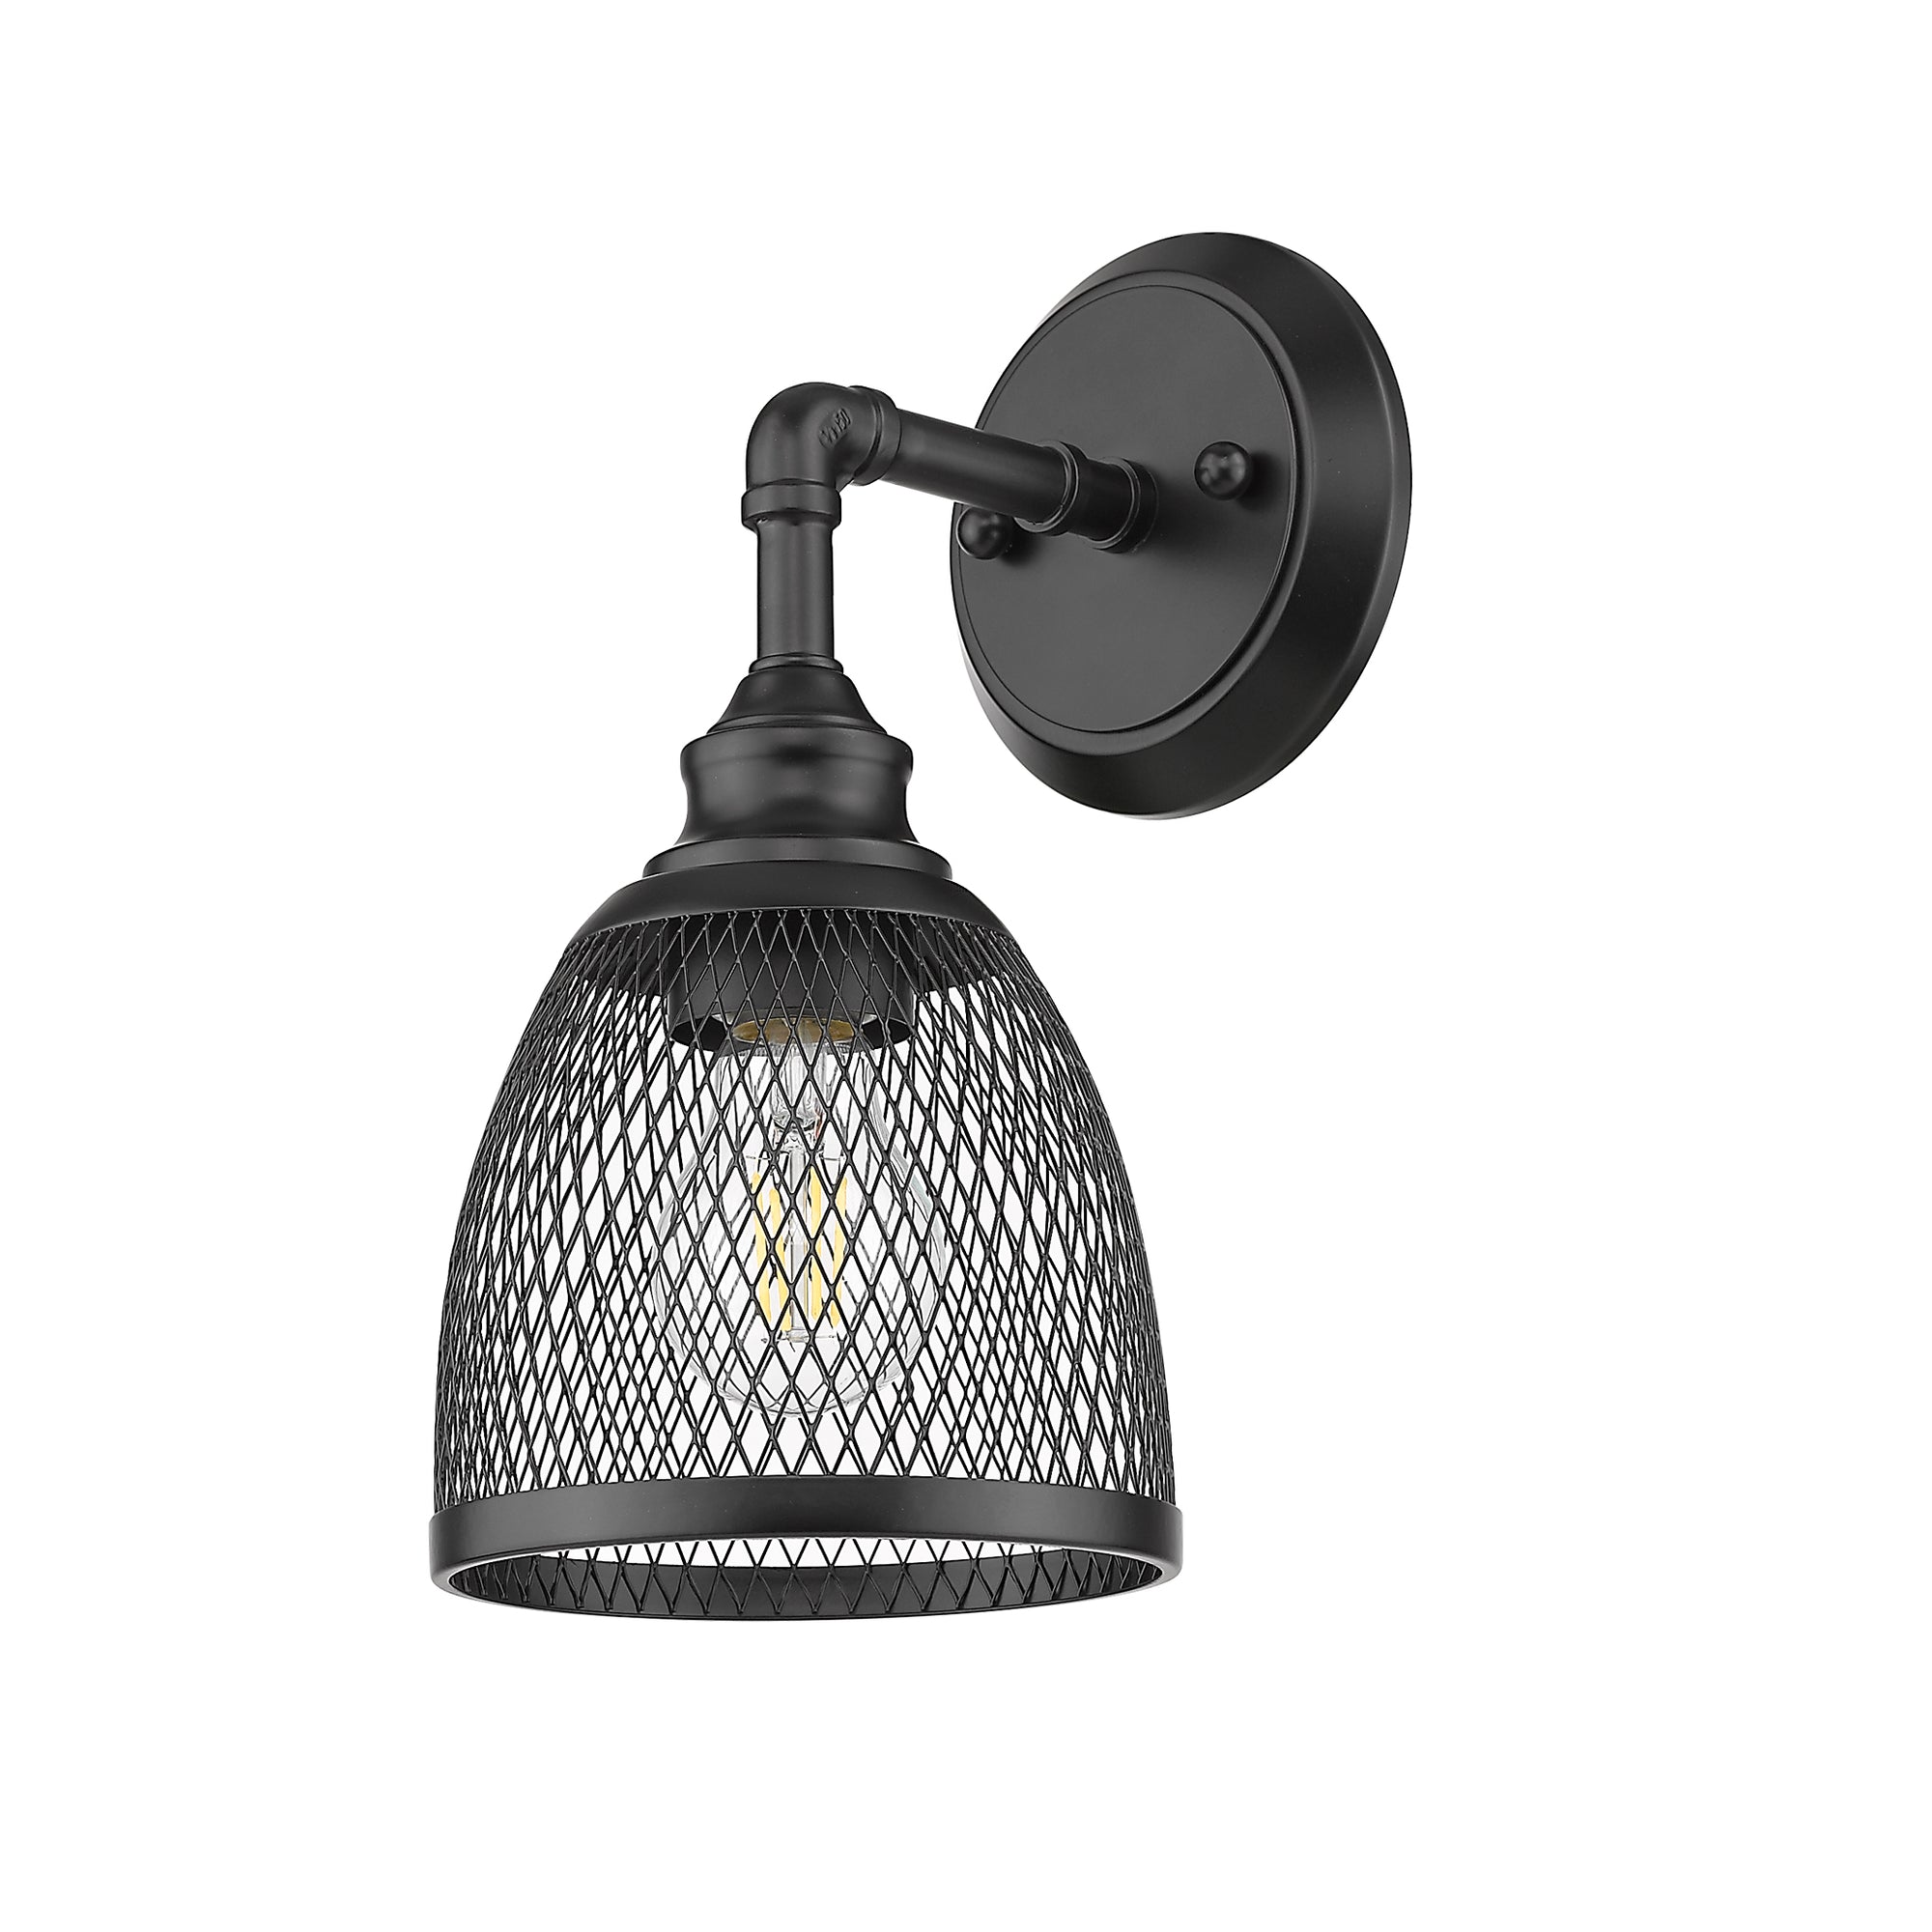 Black vanity light fixtures with 1 light - Vivio Lighting